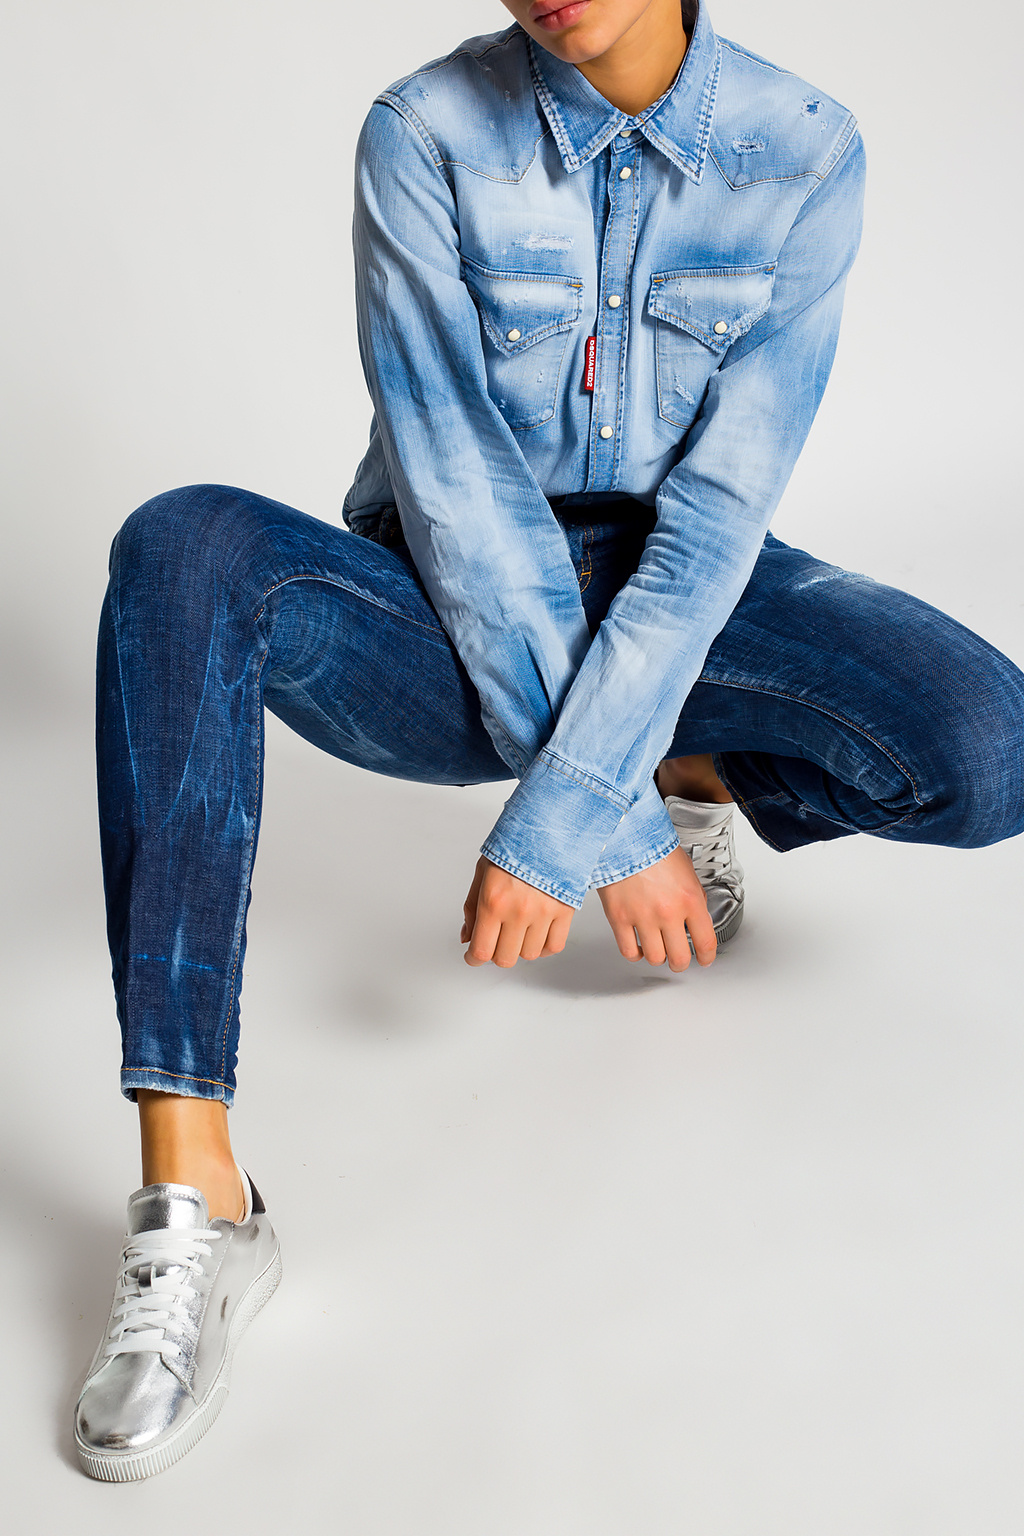 Dsquared2 'Jennifer' jeans   Women's Clothing   Vitkac